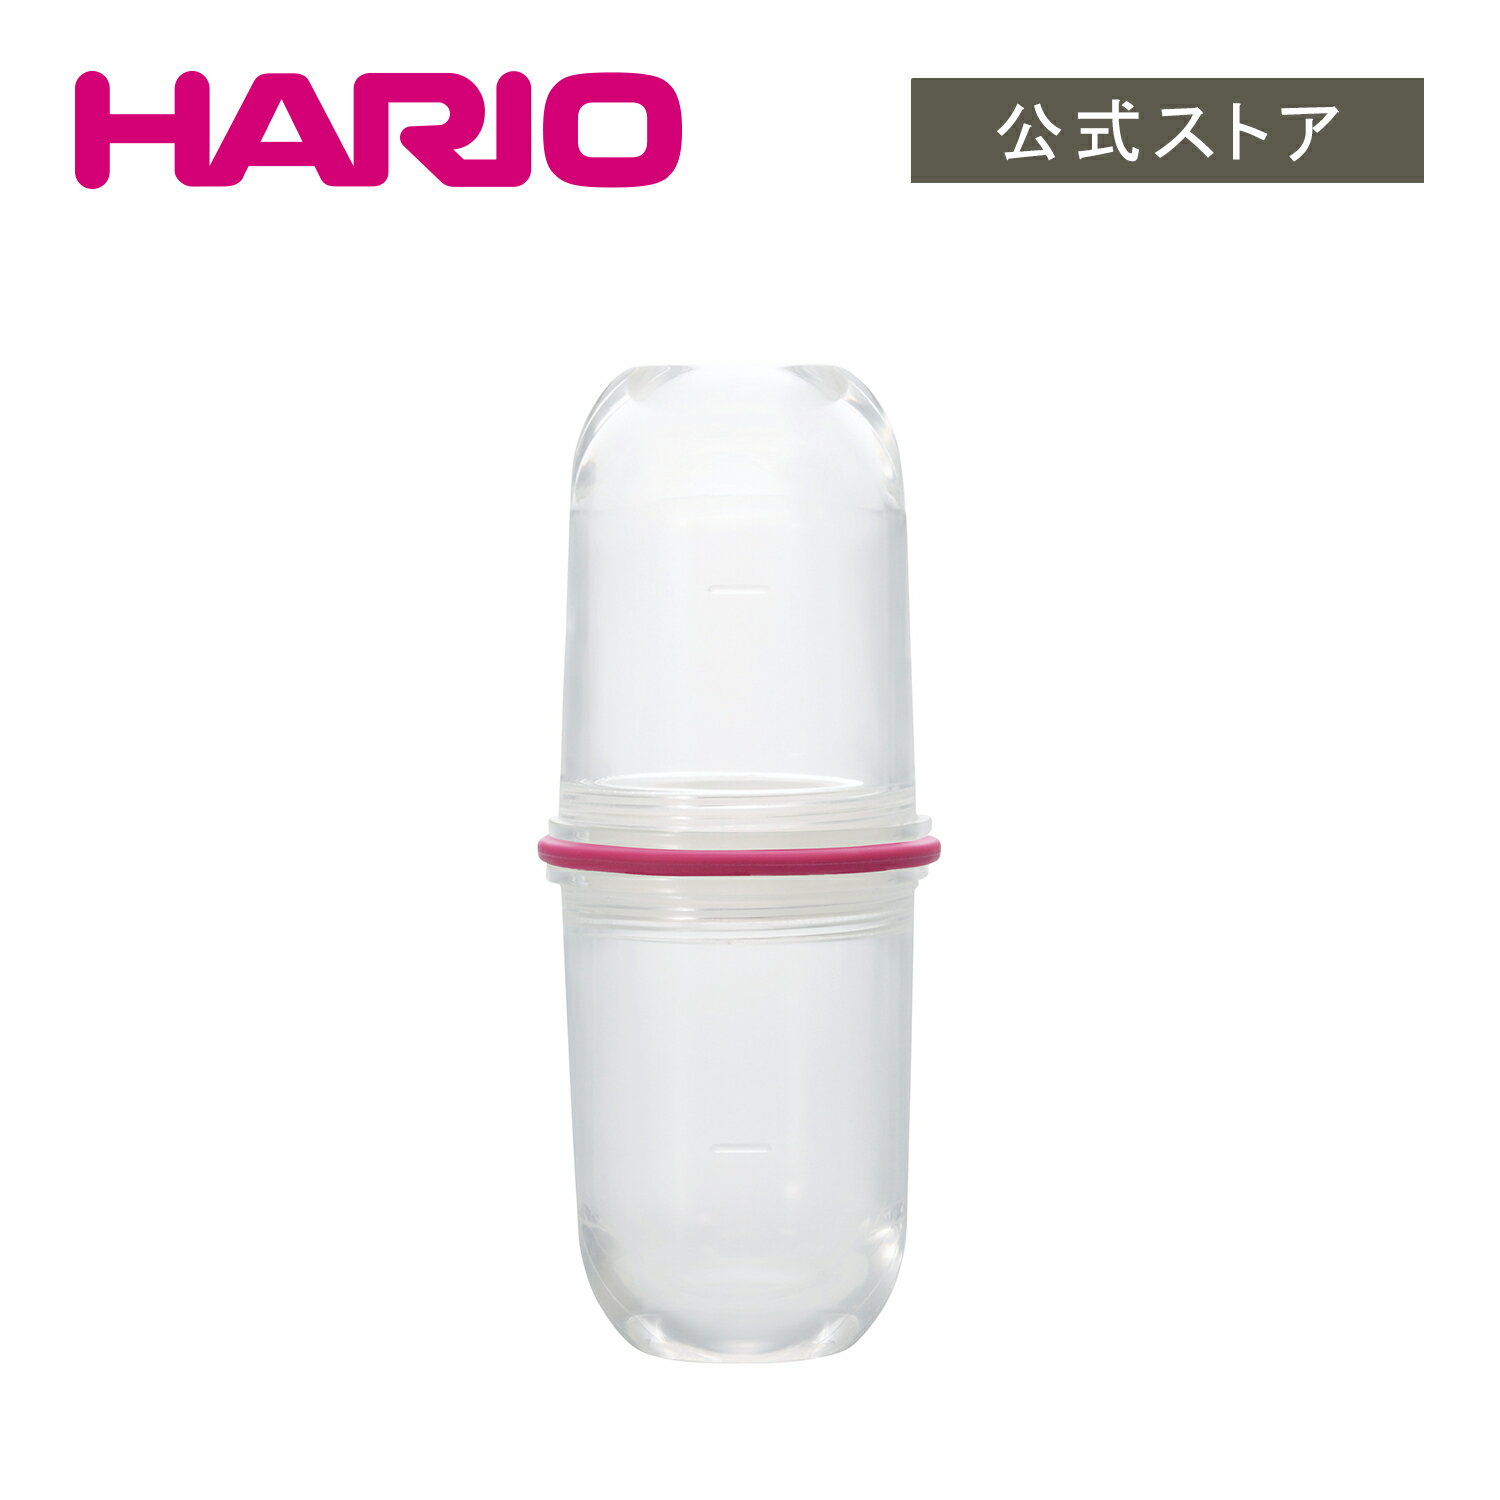 【公式ショップ】HARIO ラテシェイカー チェリーピンク　HARIO ハリオ シェイカー 手動 調理器具 ミルク ミルクフォーマー